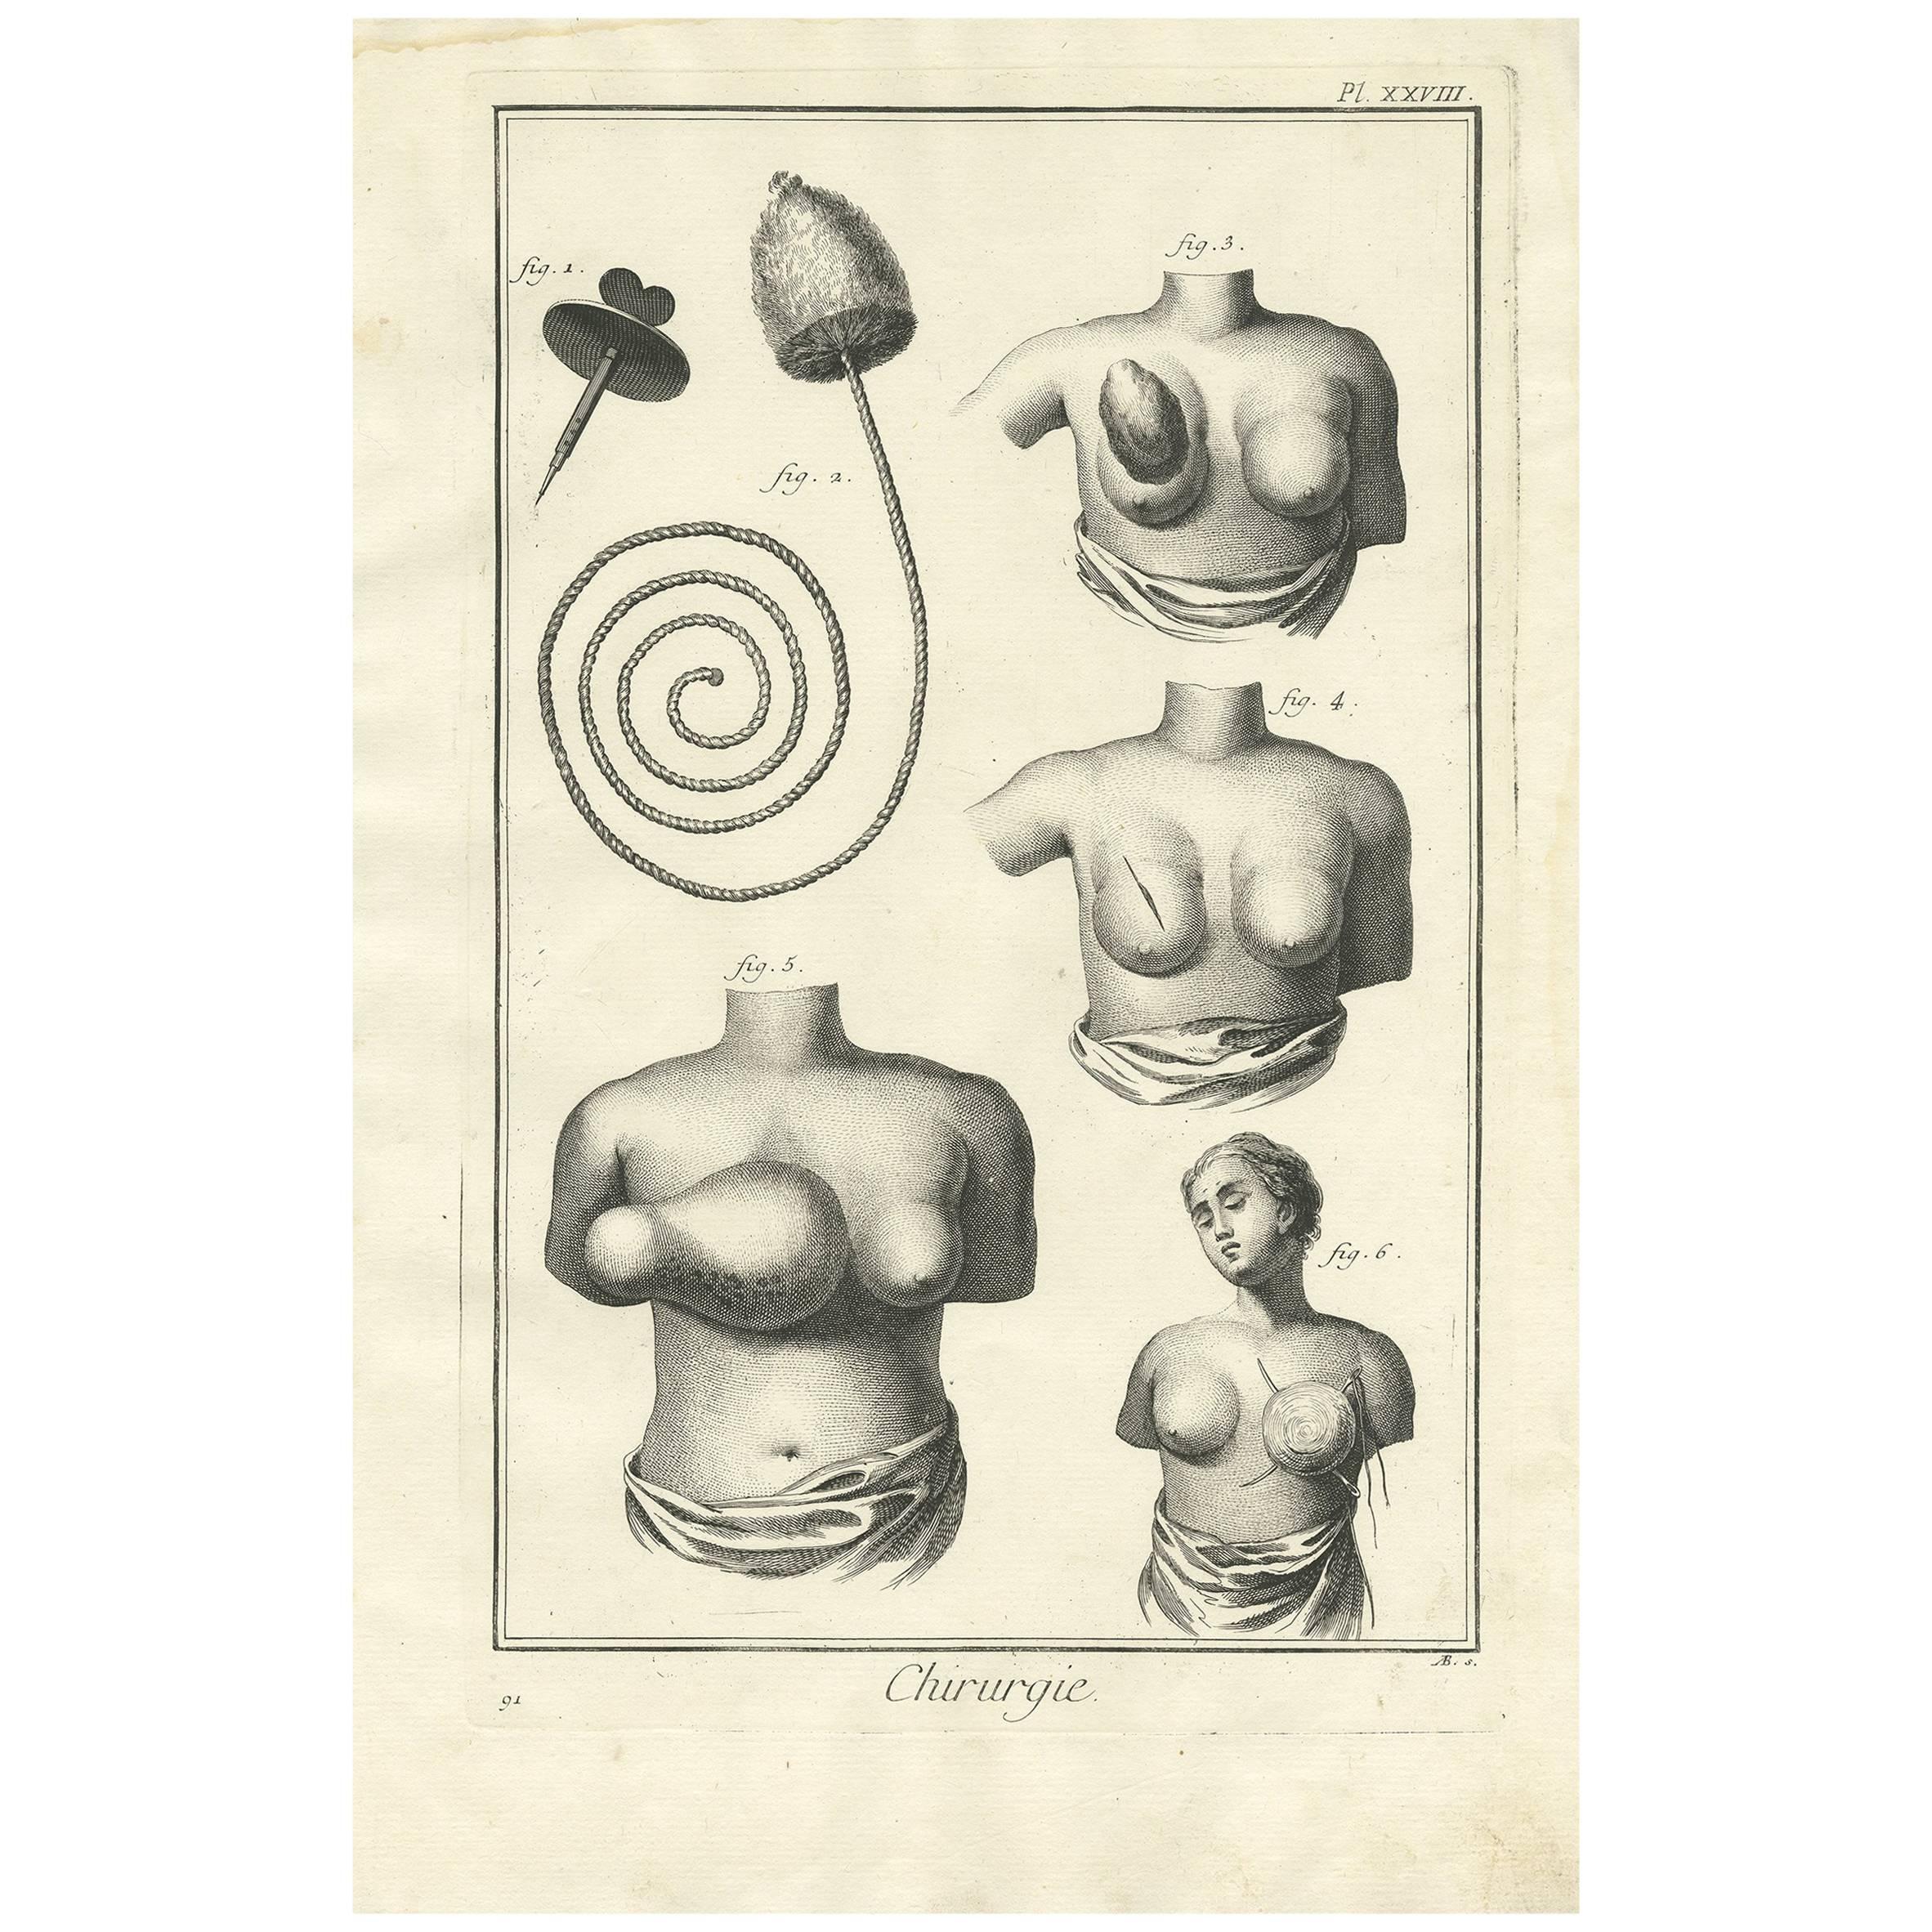 Impression médicale ancienne d'antiquités XXVIII' par D. Diderot, vers 1760